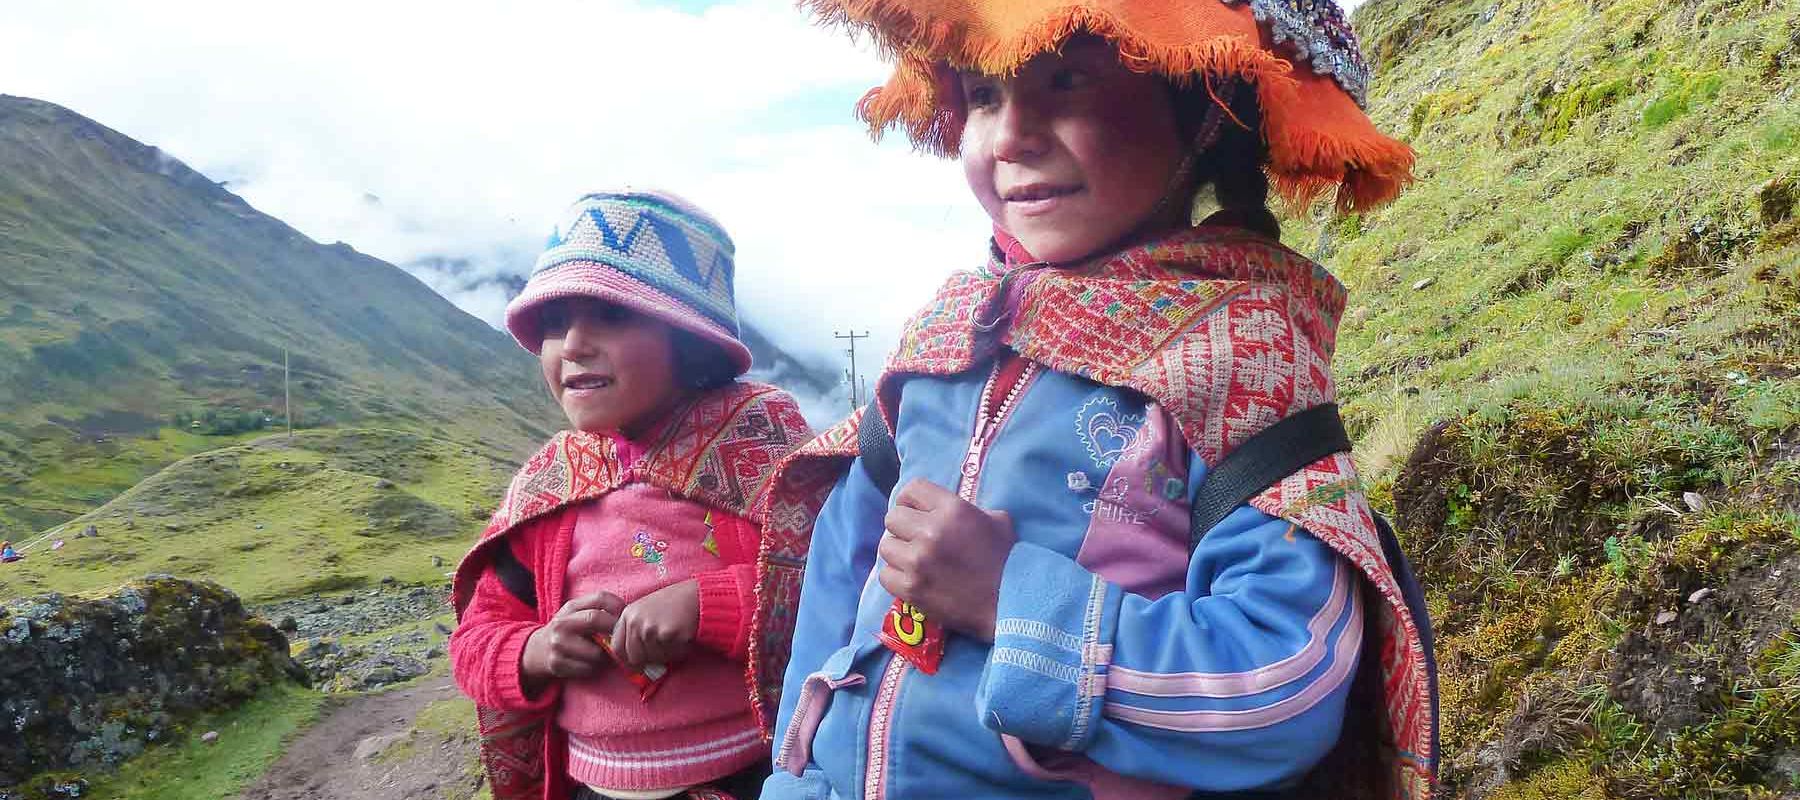 Local villagers in Machu Picchu